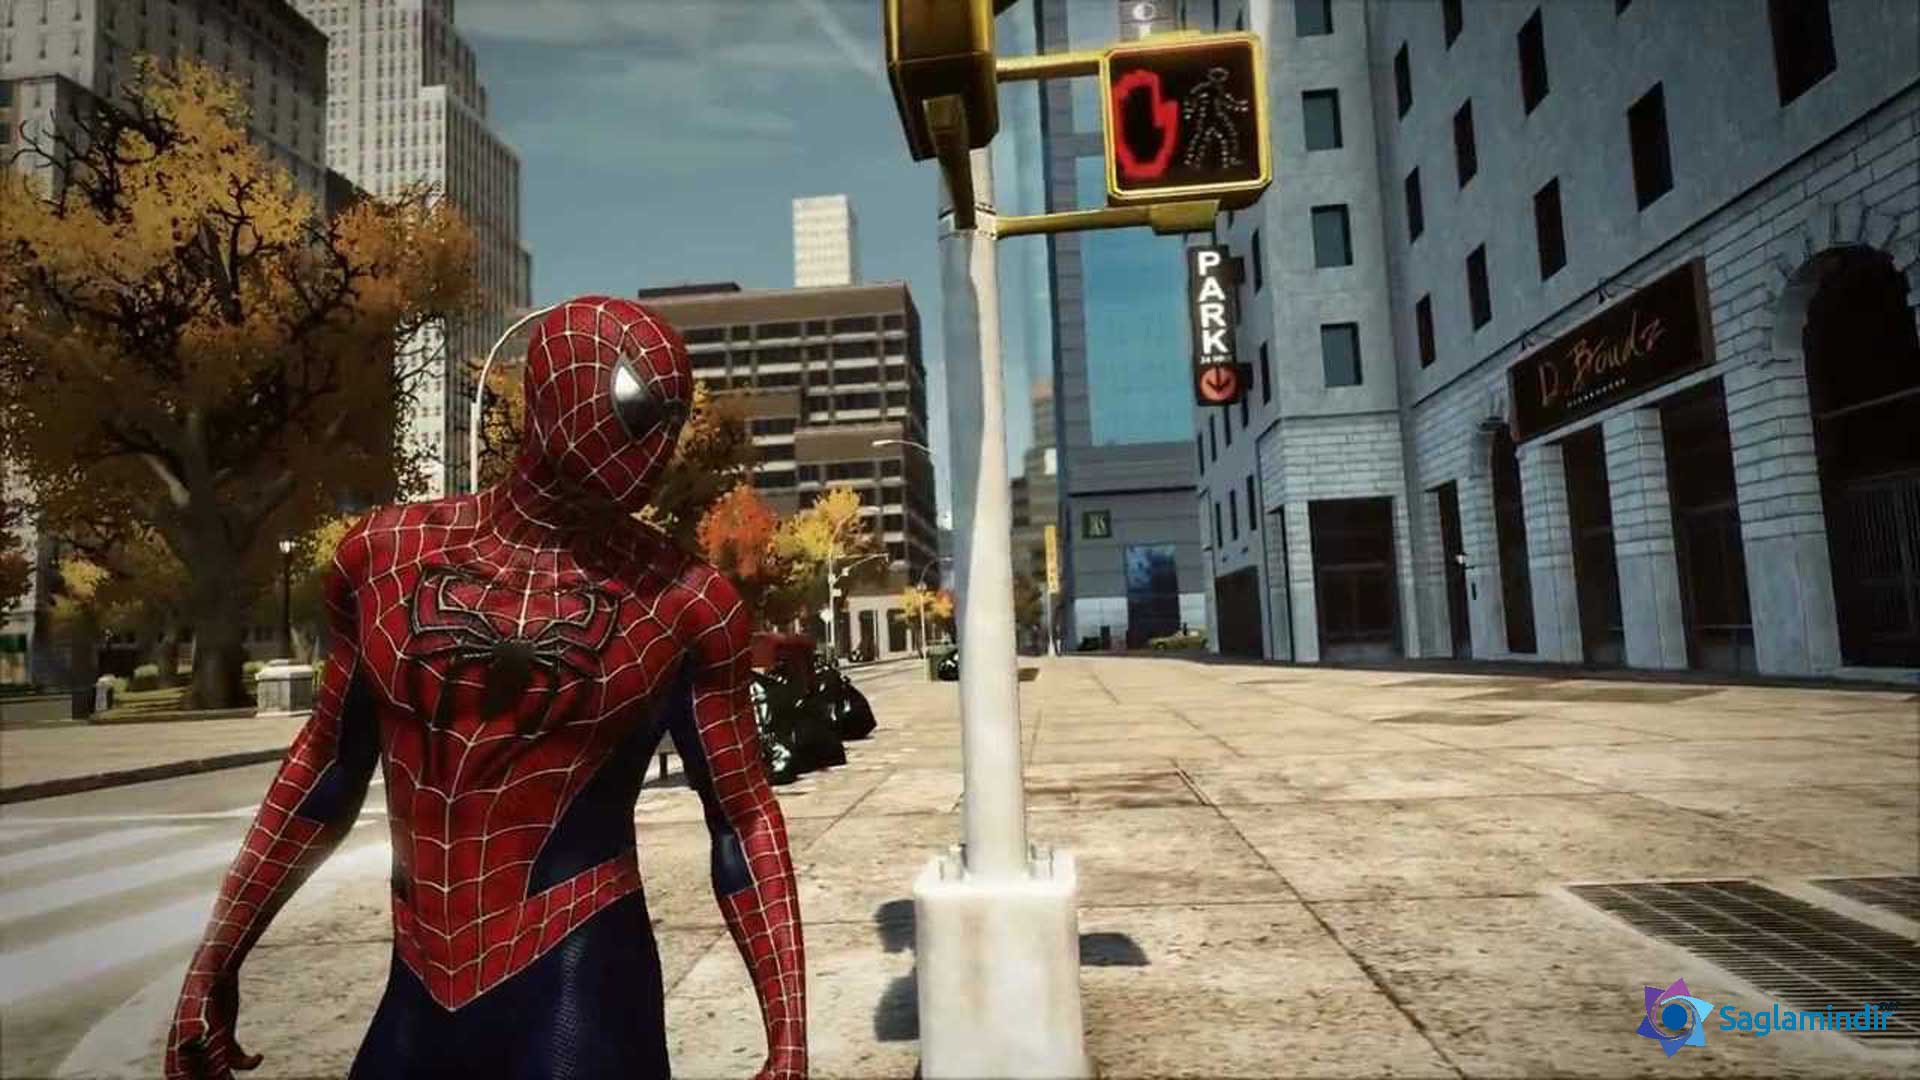 Спайдер мен пк. The amazing Spider-man (игра, 2012). Эмэйзинг Спайдер Мэн 2. Спайдер Мэн 1 игра. The amazing Spider-man 2 (игра, game boy).